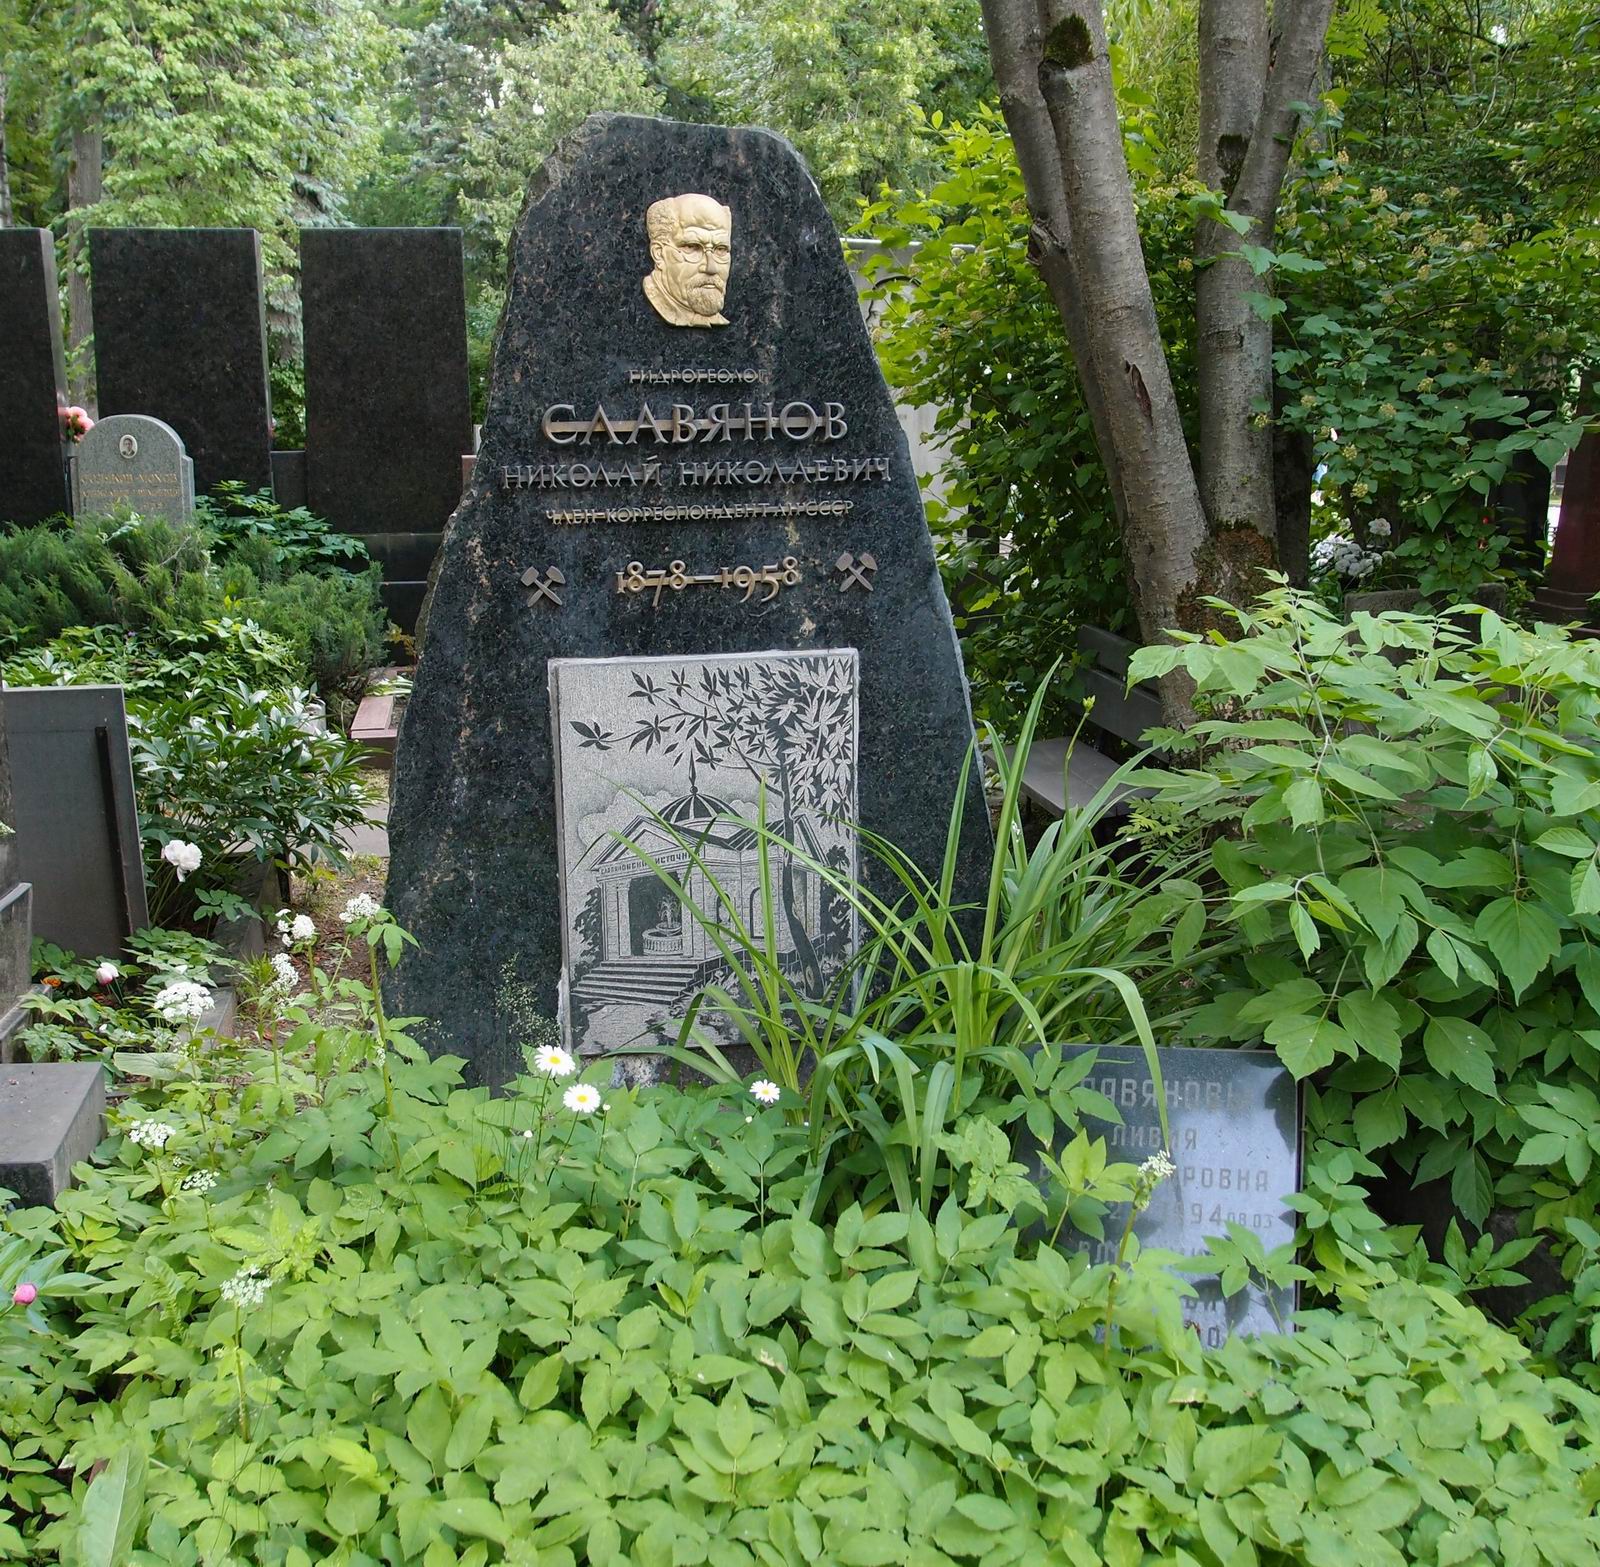 Памятник на могиле Славянова Н.Н. (1878-1958), худ. А.Петров, на Новодевичьем кладбище (5-27-4). Нажмите левую кнопку мыши чтобы увидеть фрагмент памятника.